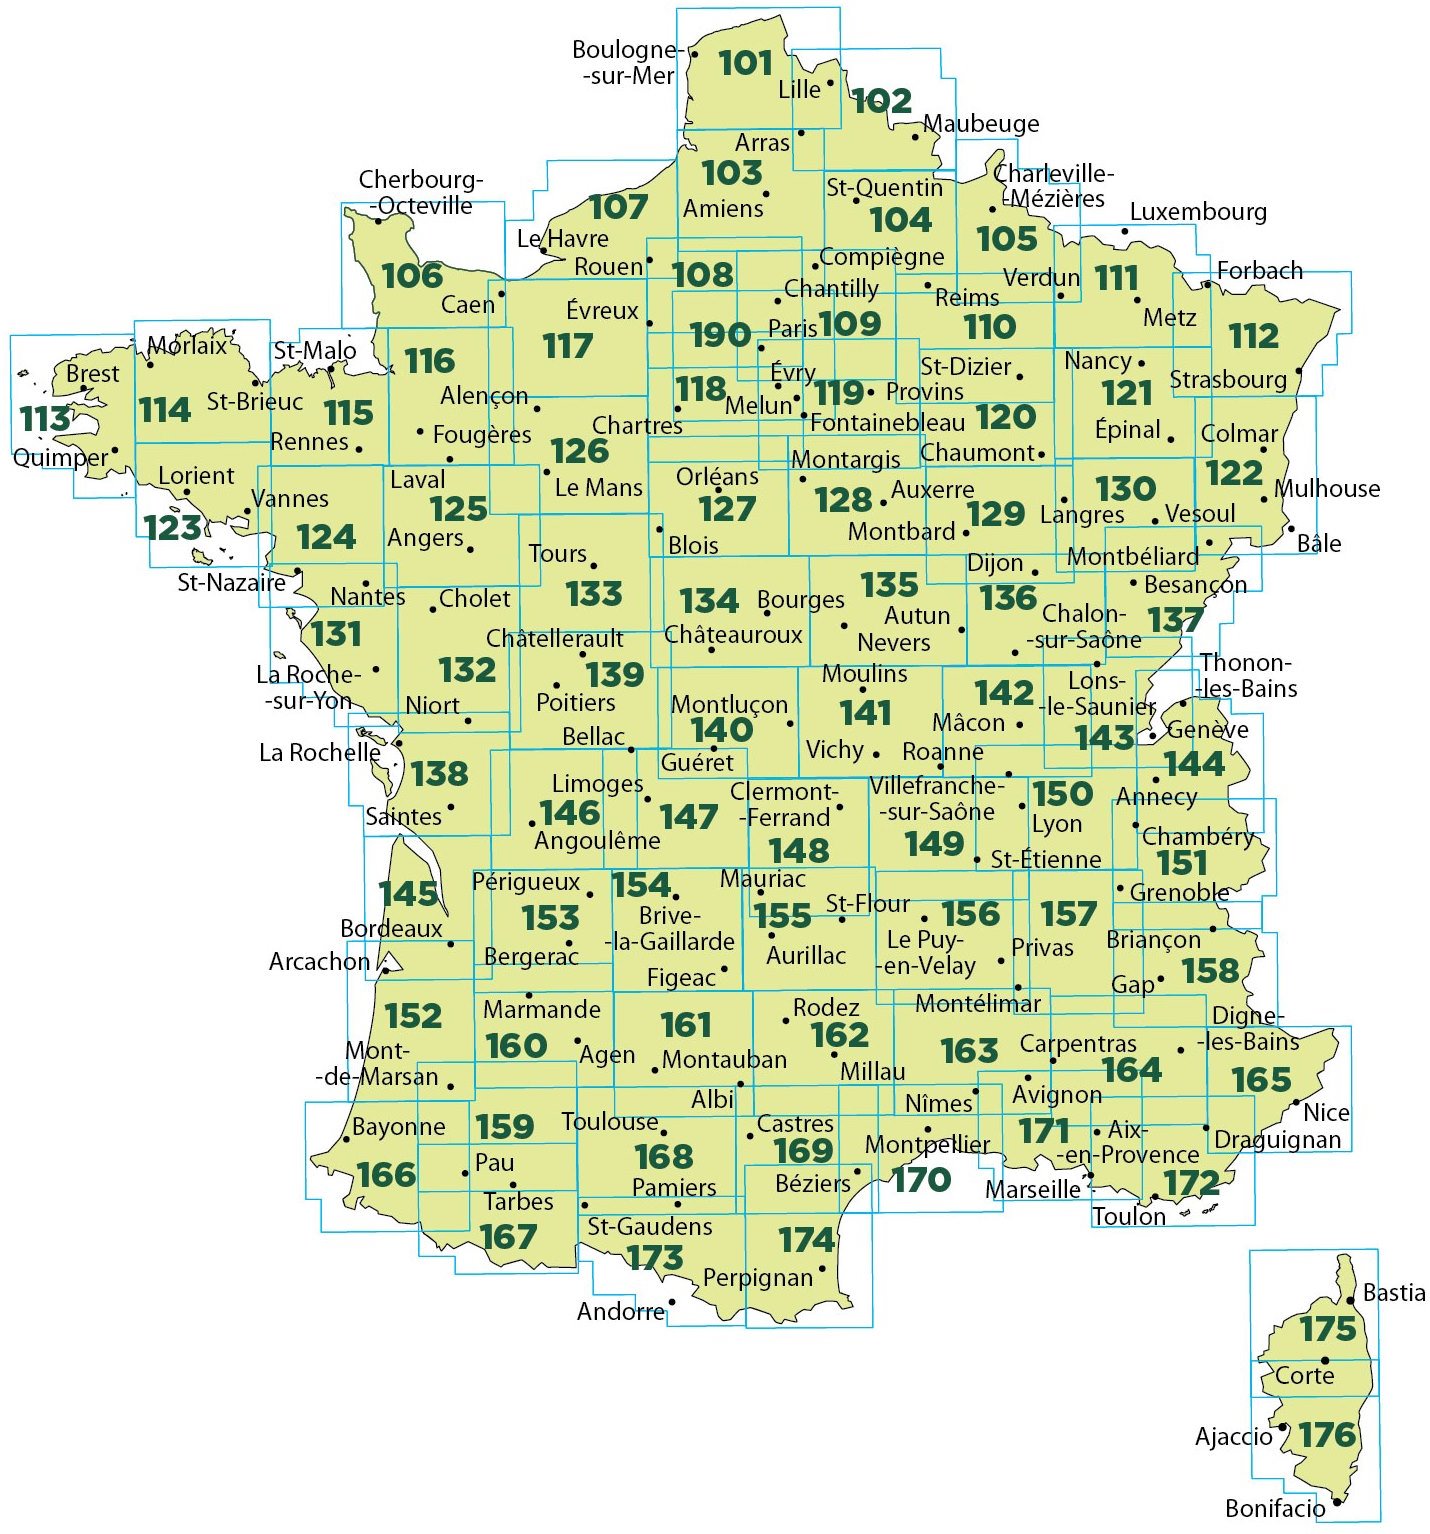 Overzicht IGN wegenkaarten Frankrijk 1:100.000